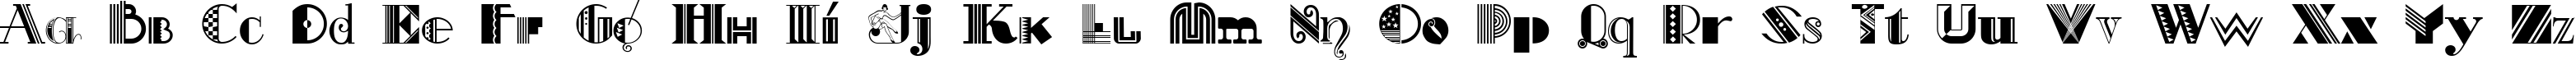 Пример написания английского алфавита шрифтом Art-Decorina